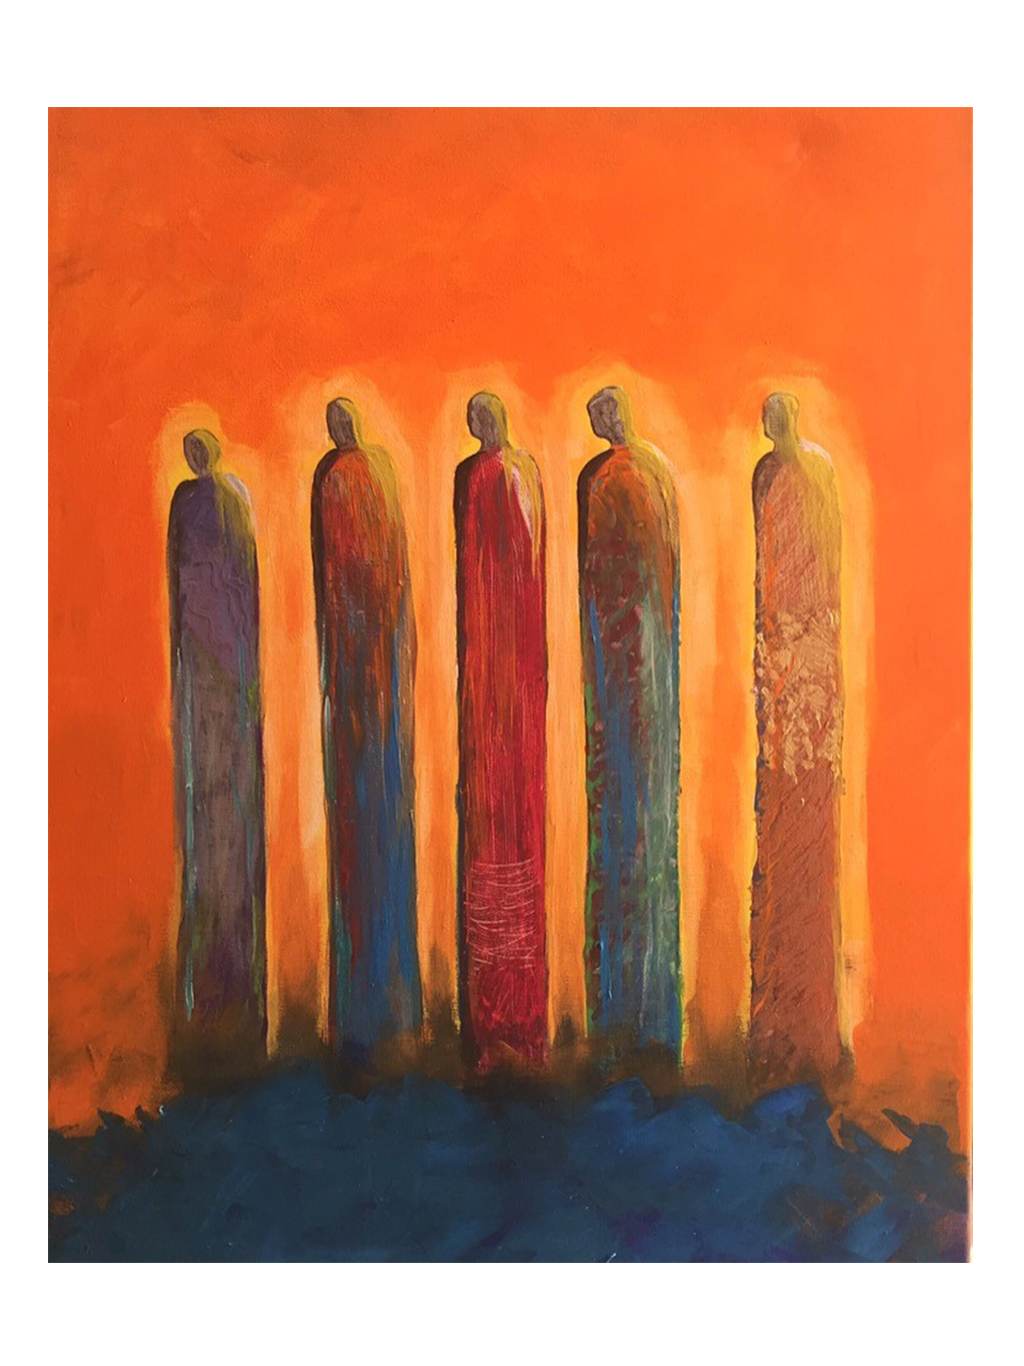 Five wise men - by Jylan Khairat